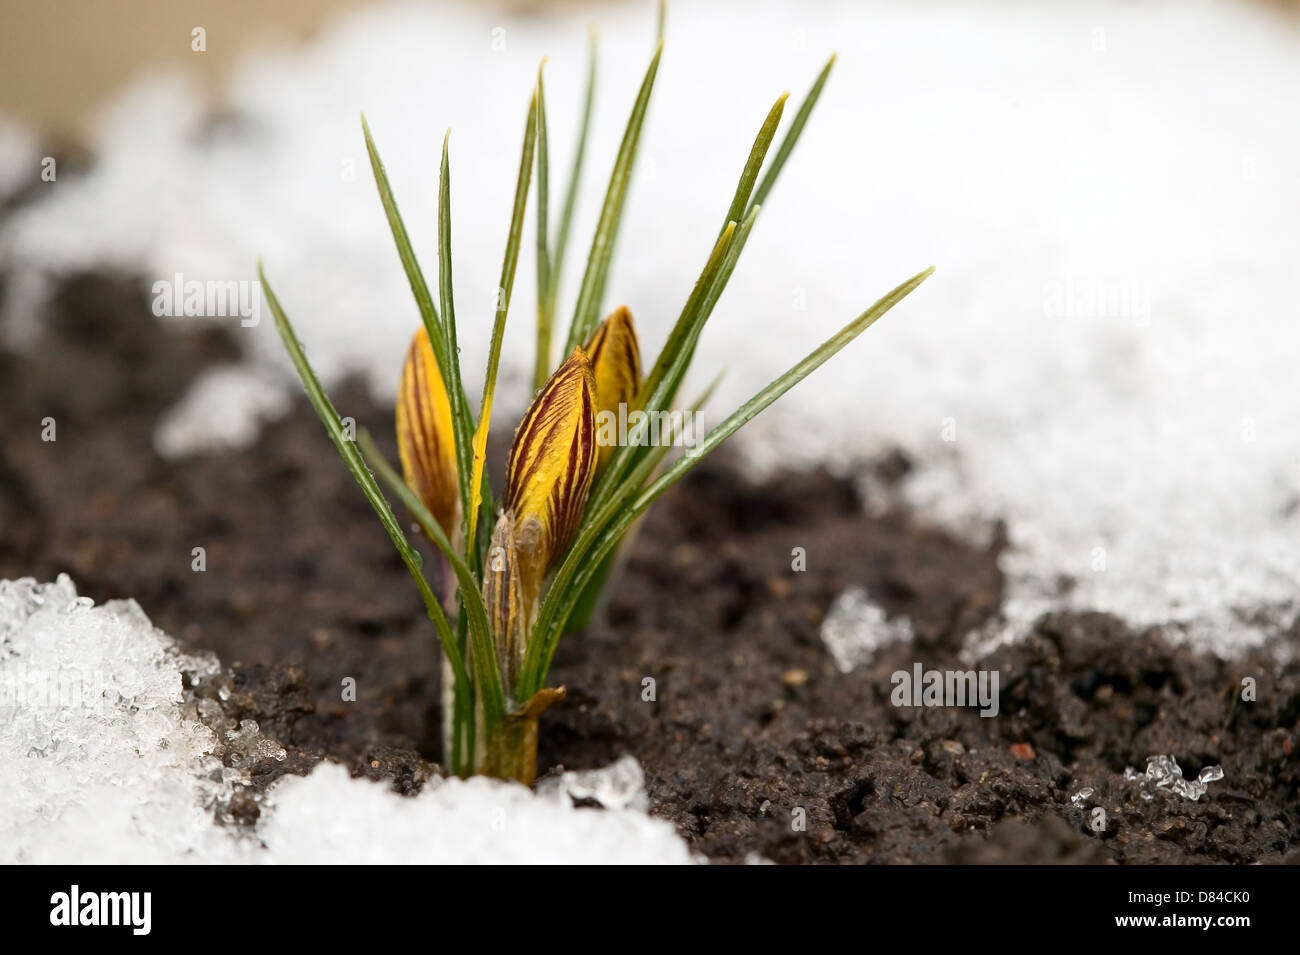 Fleur jaune sur le sol, la neige autour, concept de printemps Banque D'Images